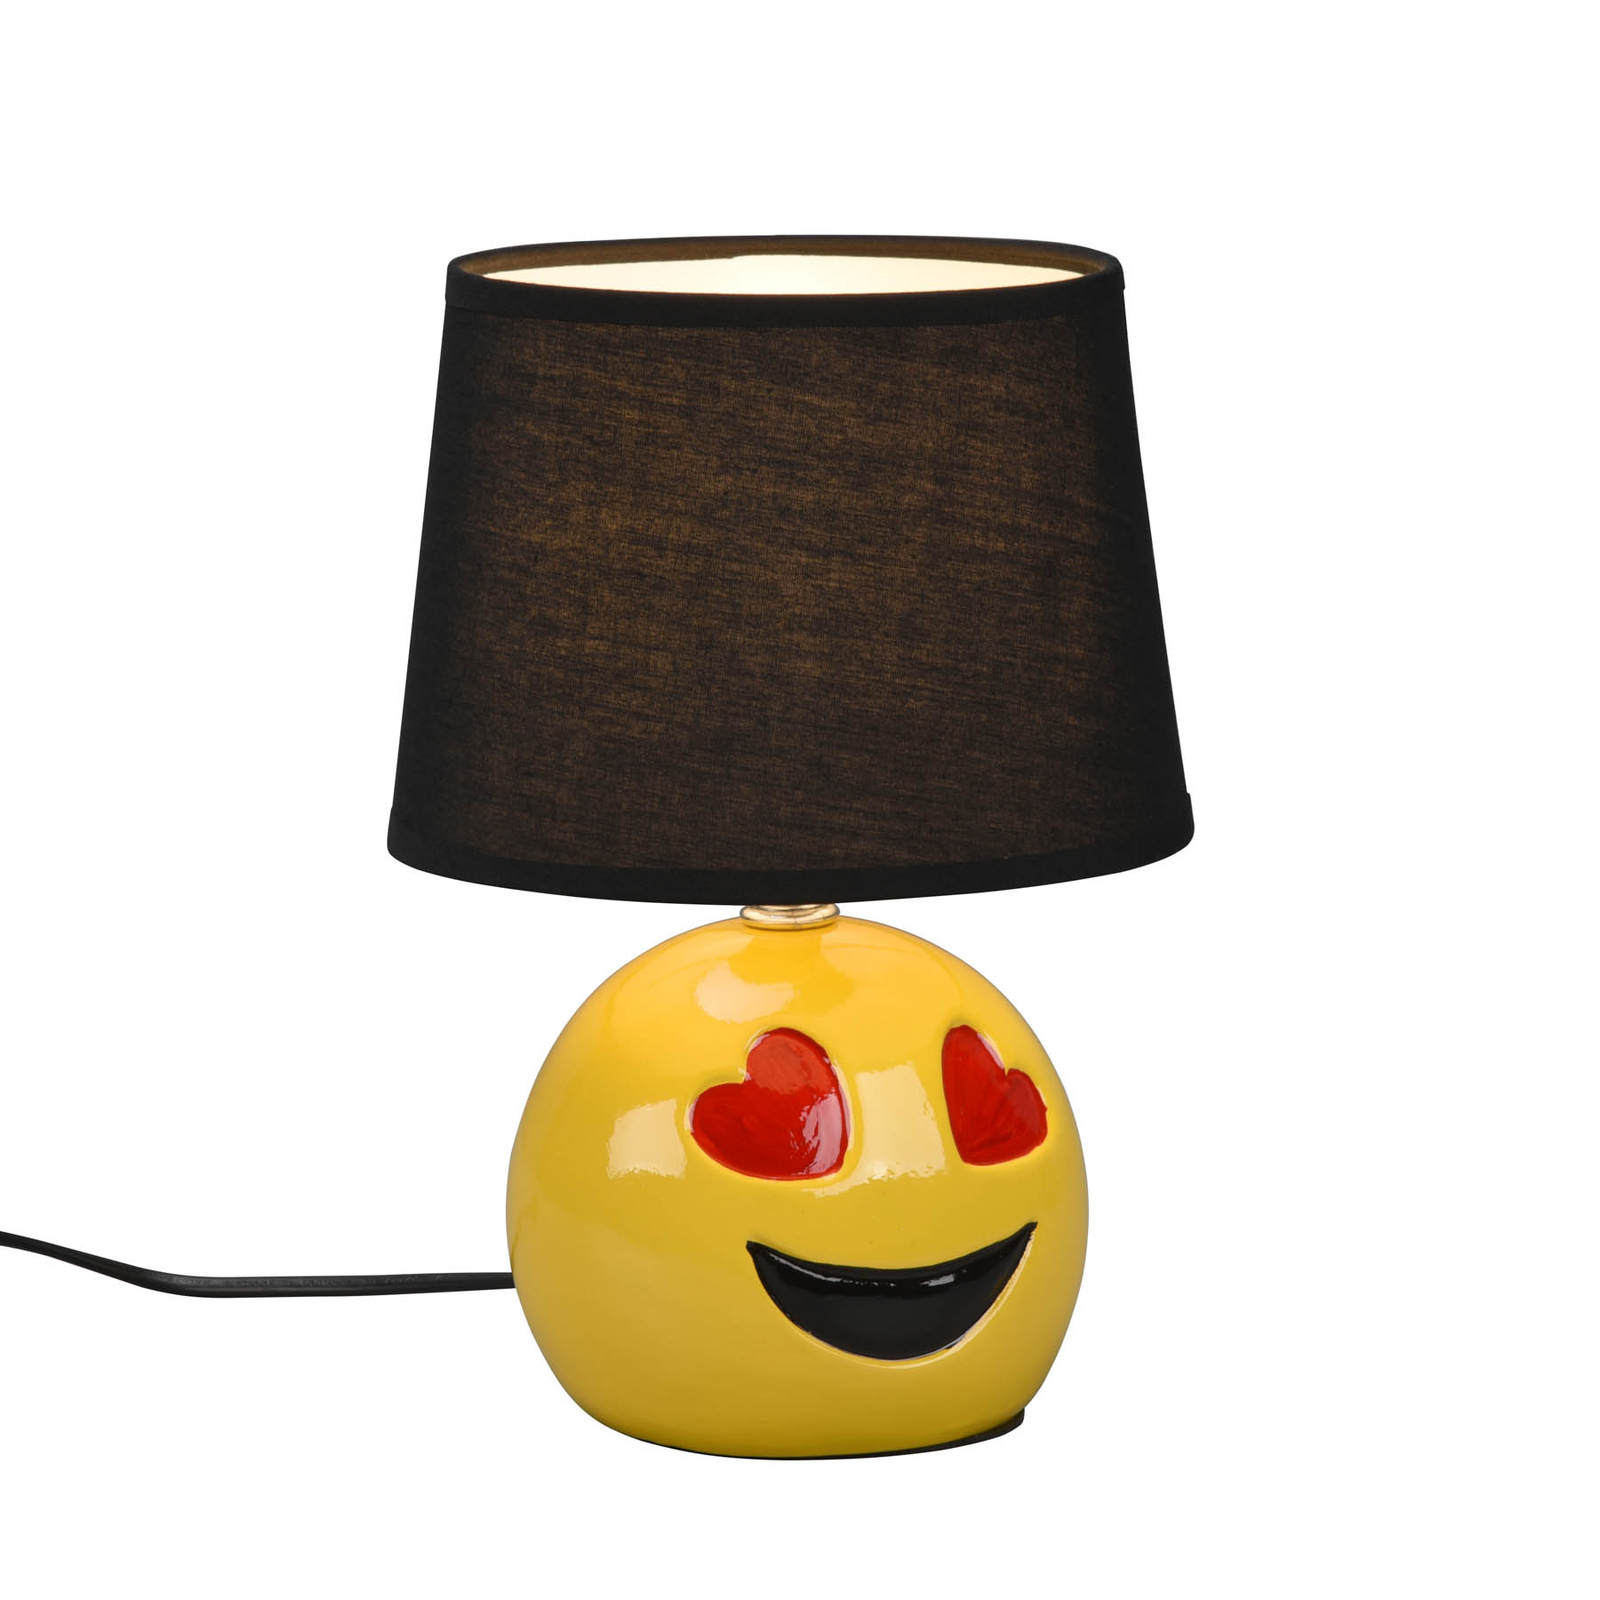 Lovely bordlampe med smiley, sort stofskærm